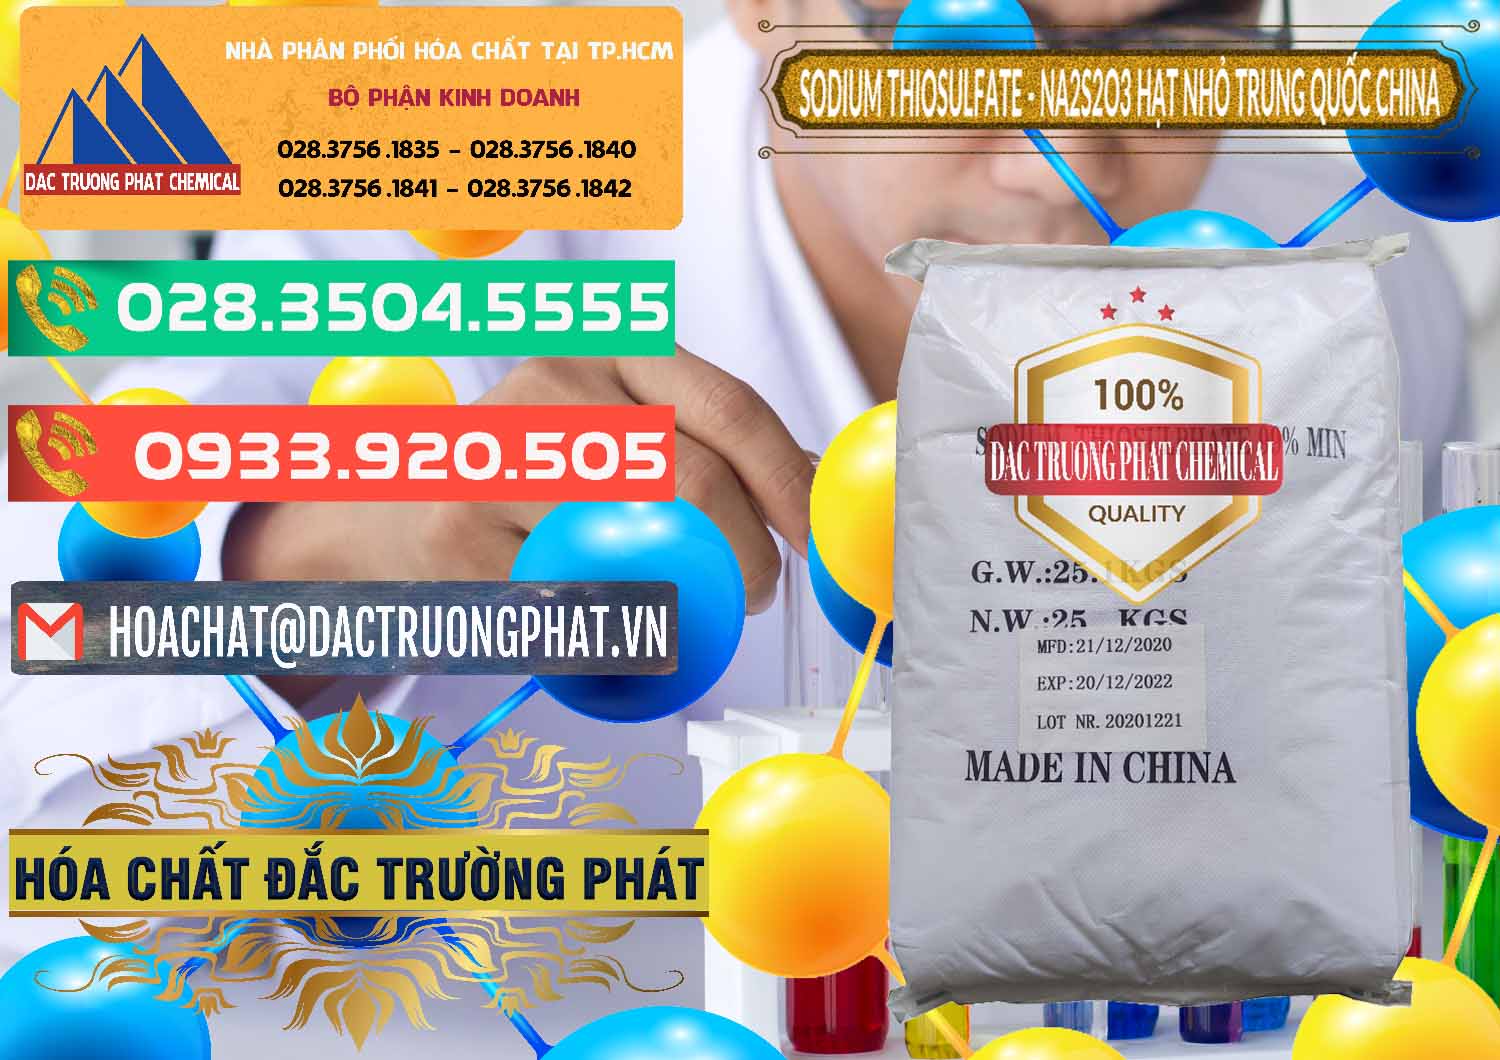 Bán ( cung cấp ) Sodium Thiosulfate - NA2S2O3 Hạt Nhỏ Trung Quốc China - 0204 - Công ty chuyên kinh doanh - phân phối hóa chất tại TP.HCM - congtyhoachat.com.vn